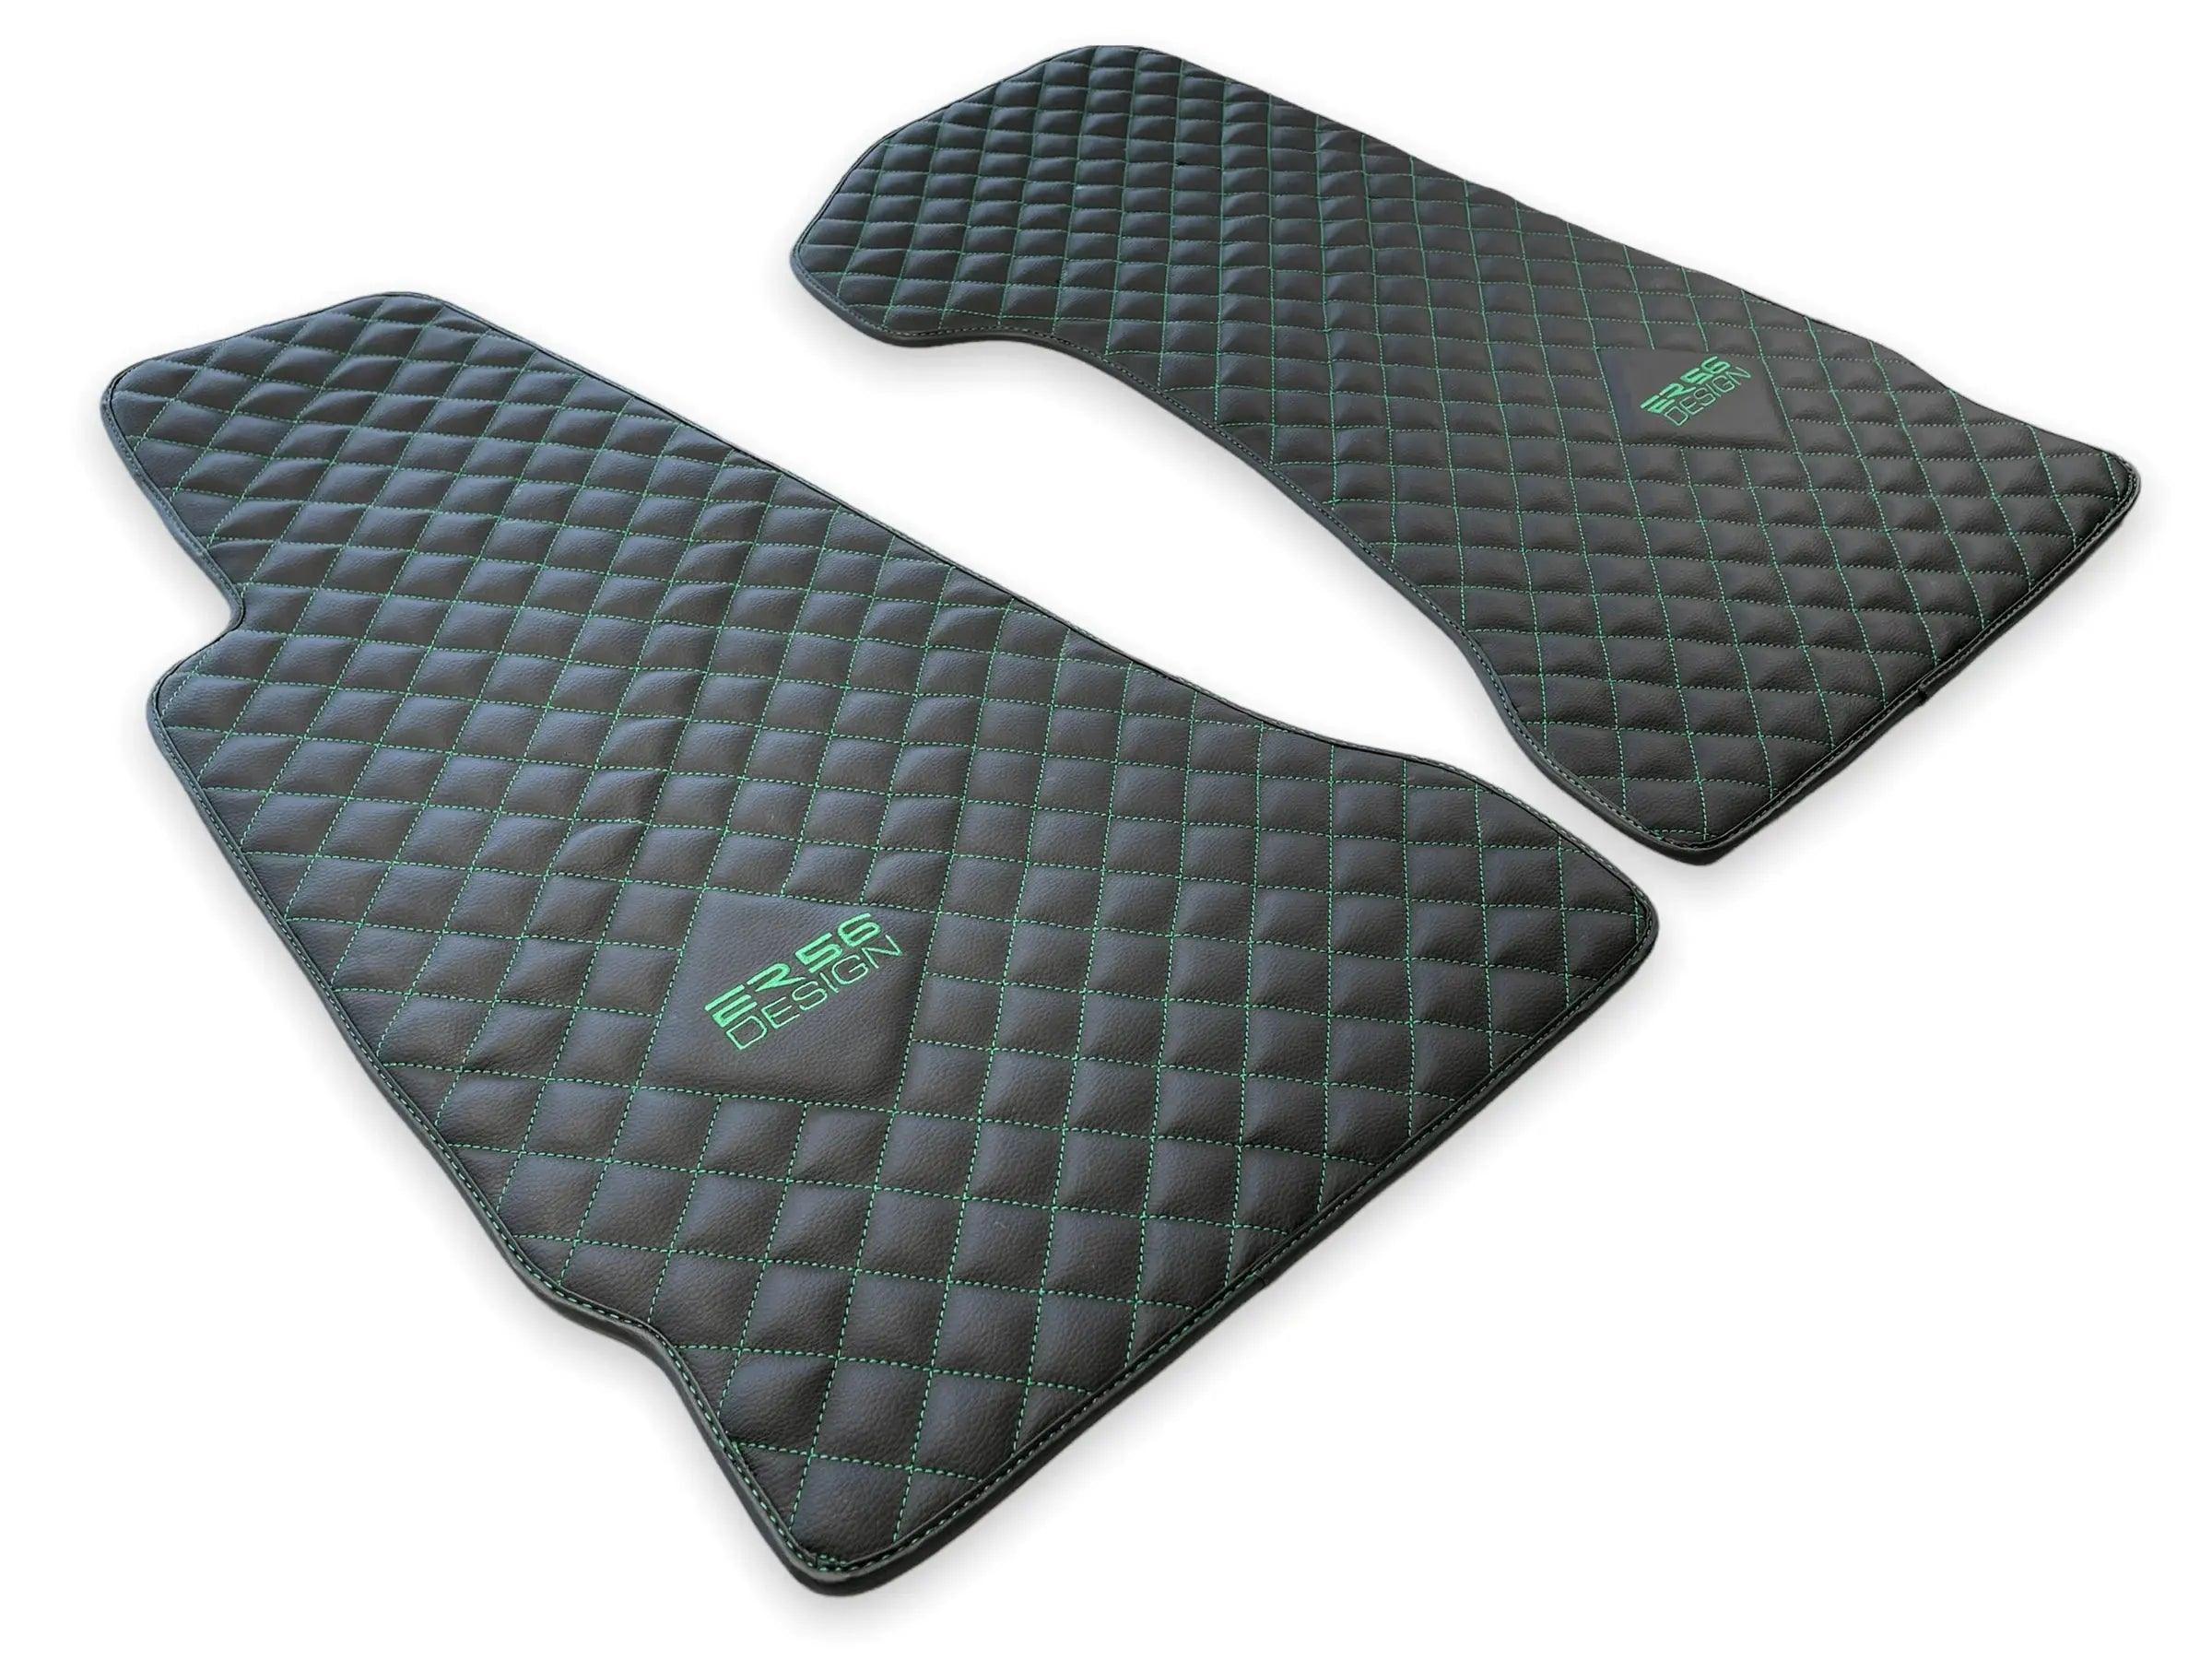 Leather Floor Mats For Aston Martin DBX (2020– 2023) ER56 Design